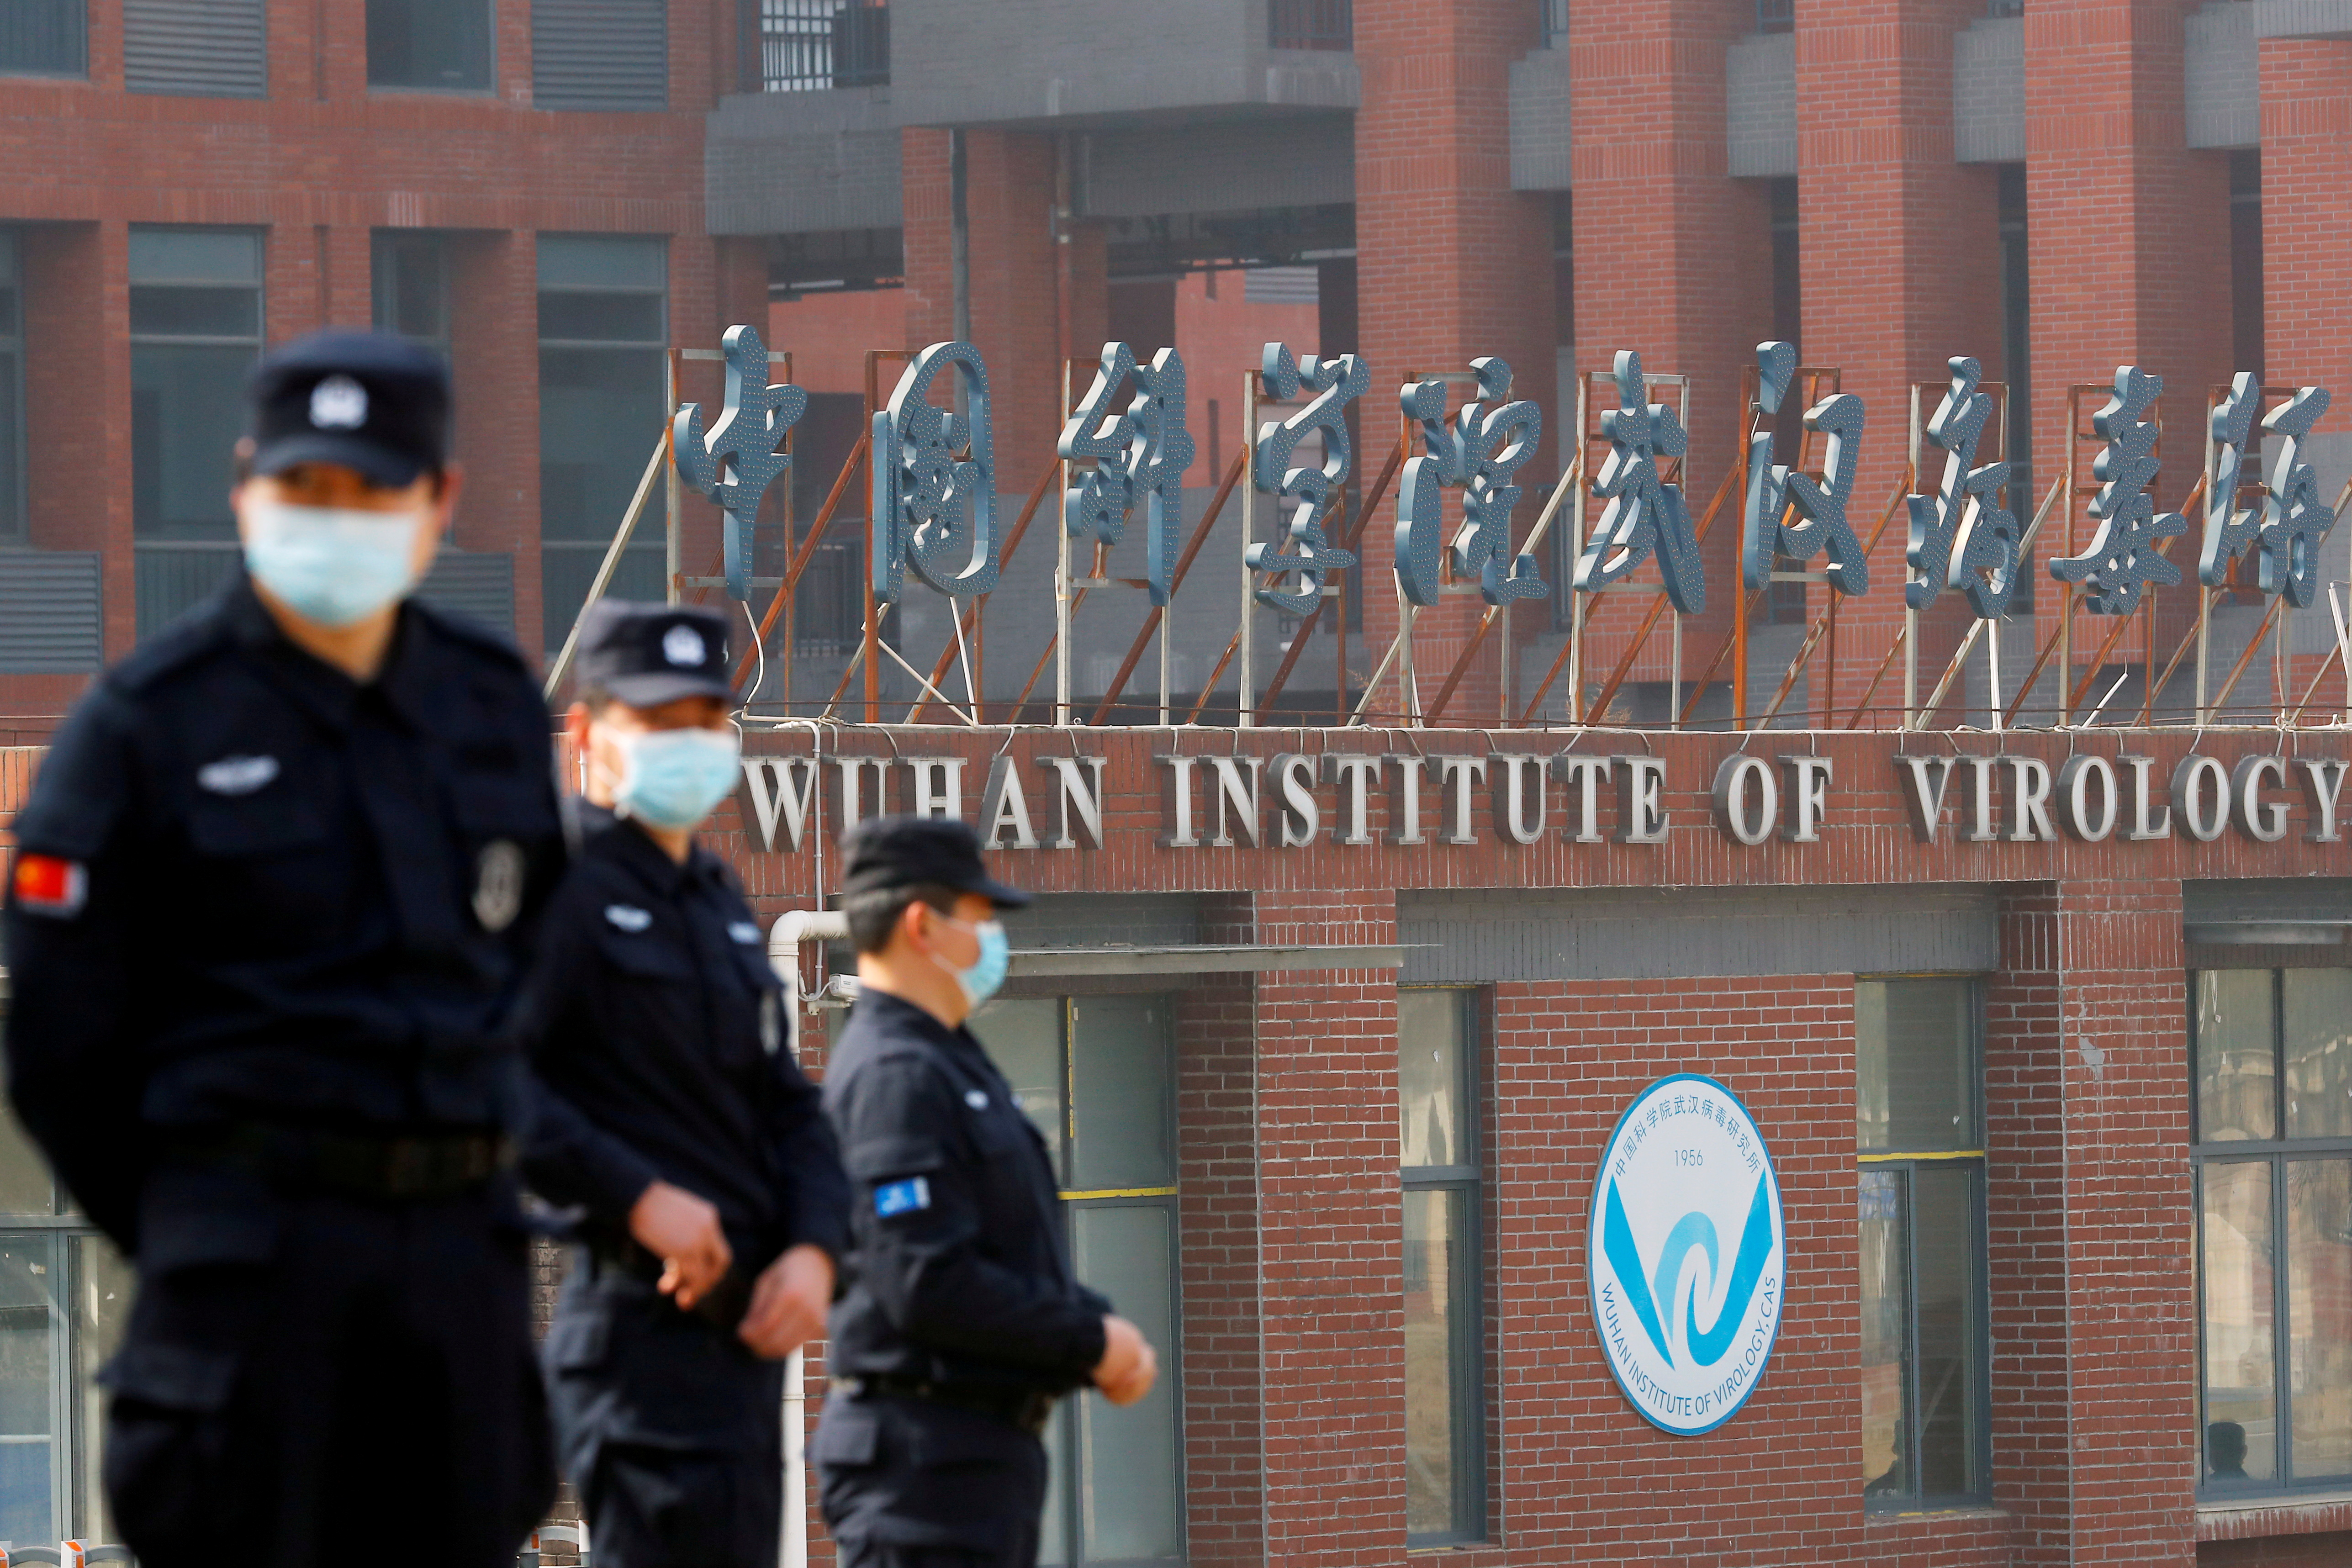 El origen de las sospechas sobre el laboratorio de Wuhan: La muerte de tres trabajadores en una mina llena de murciélagos en 2012